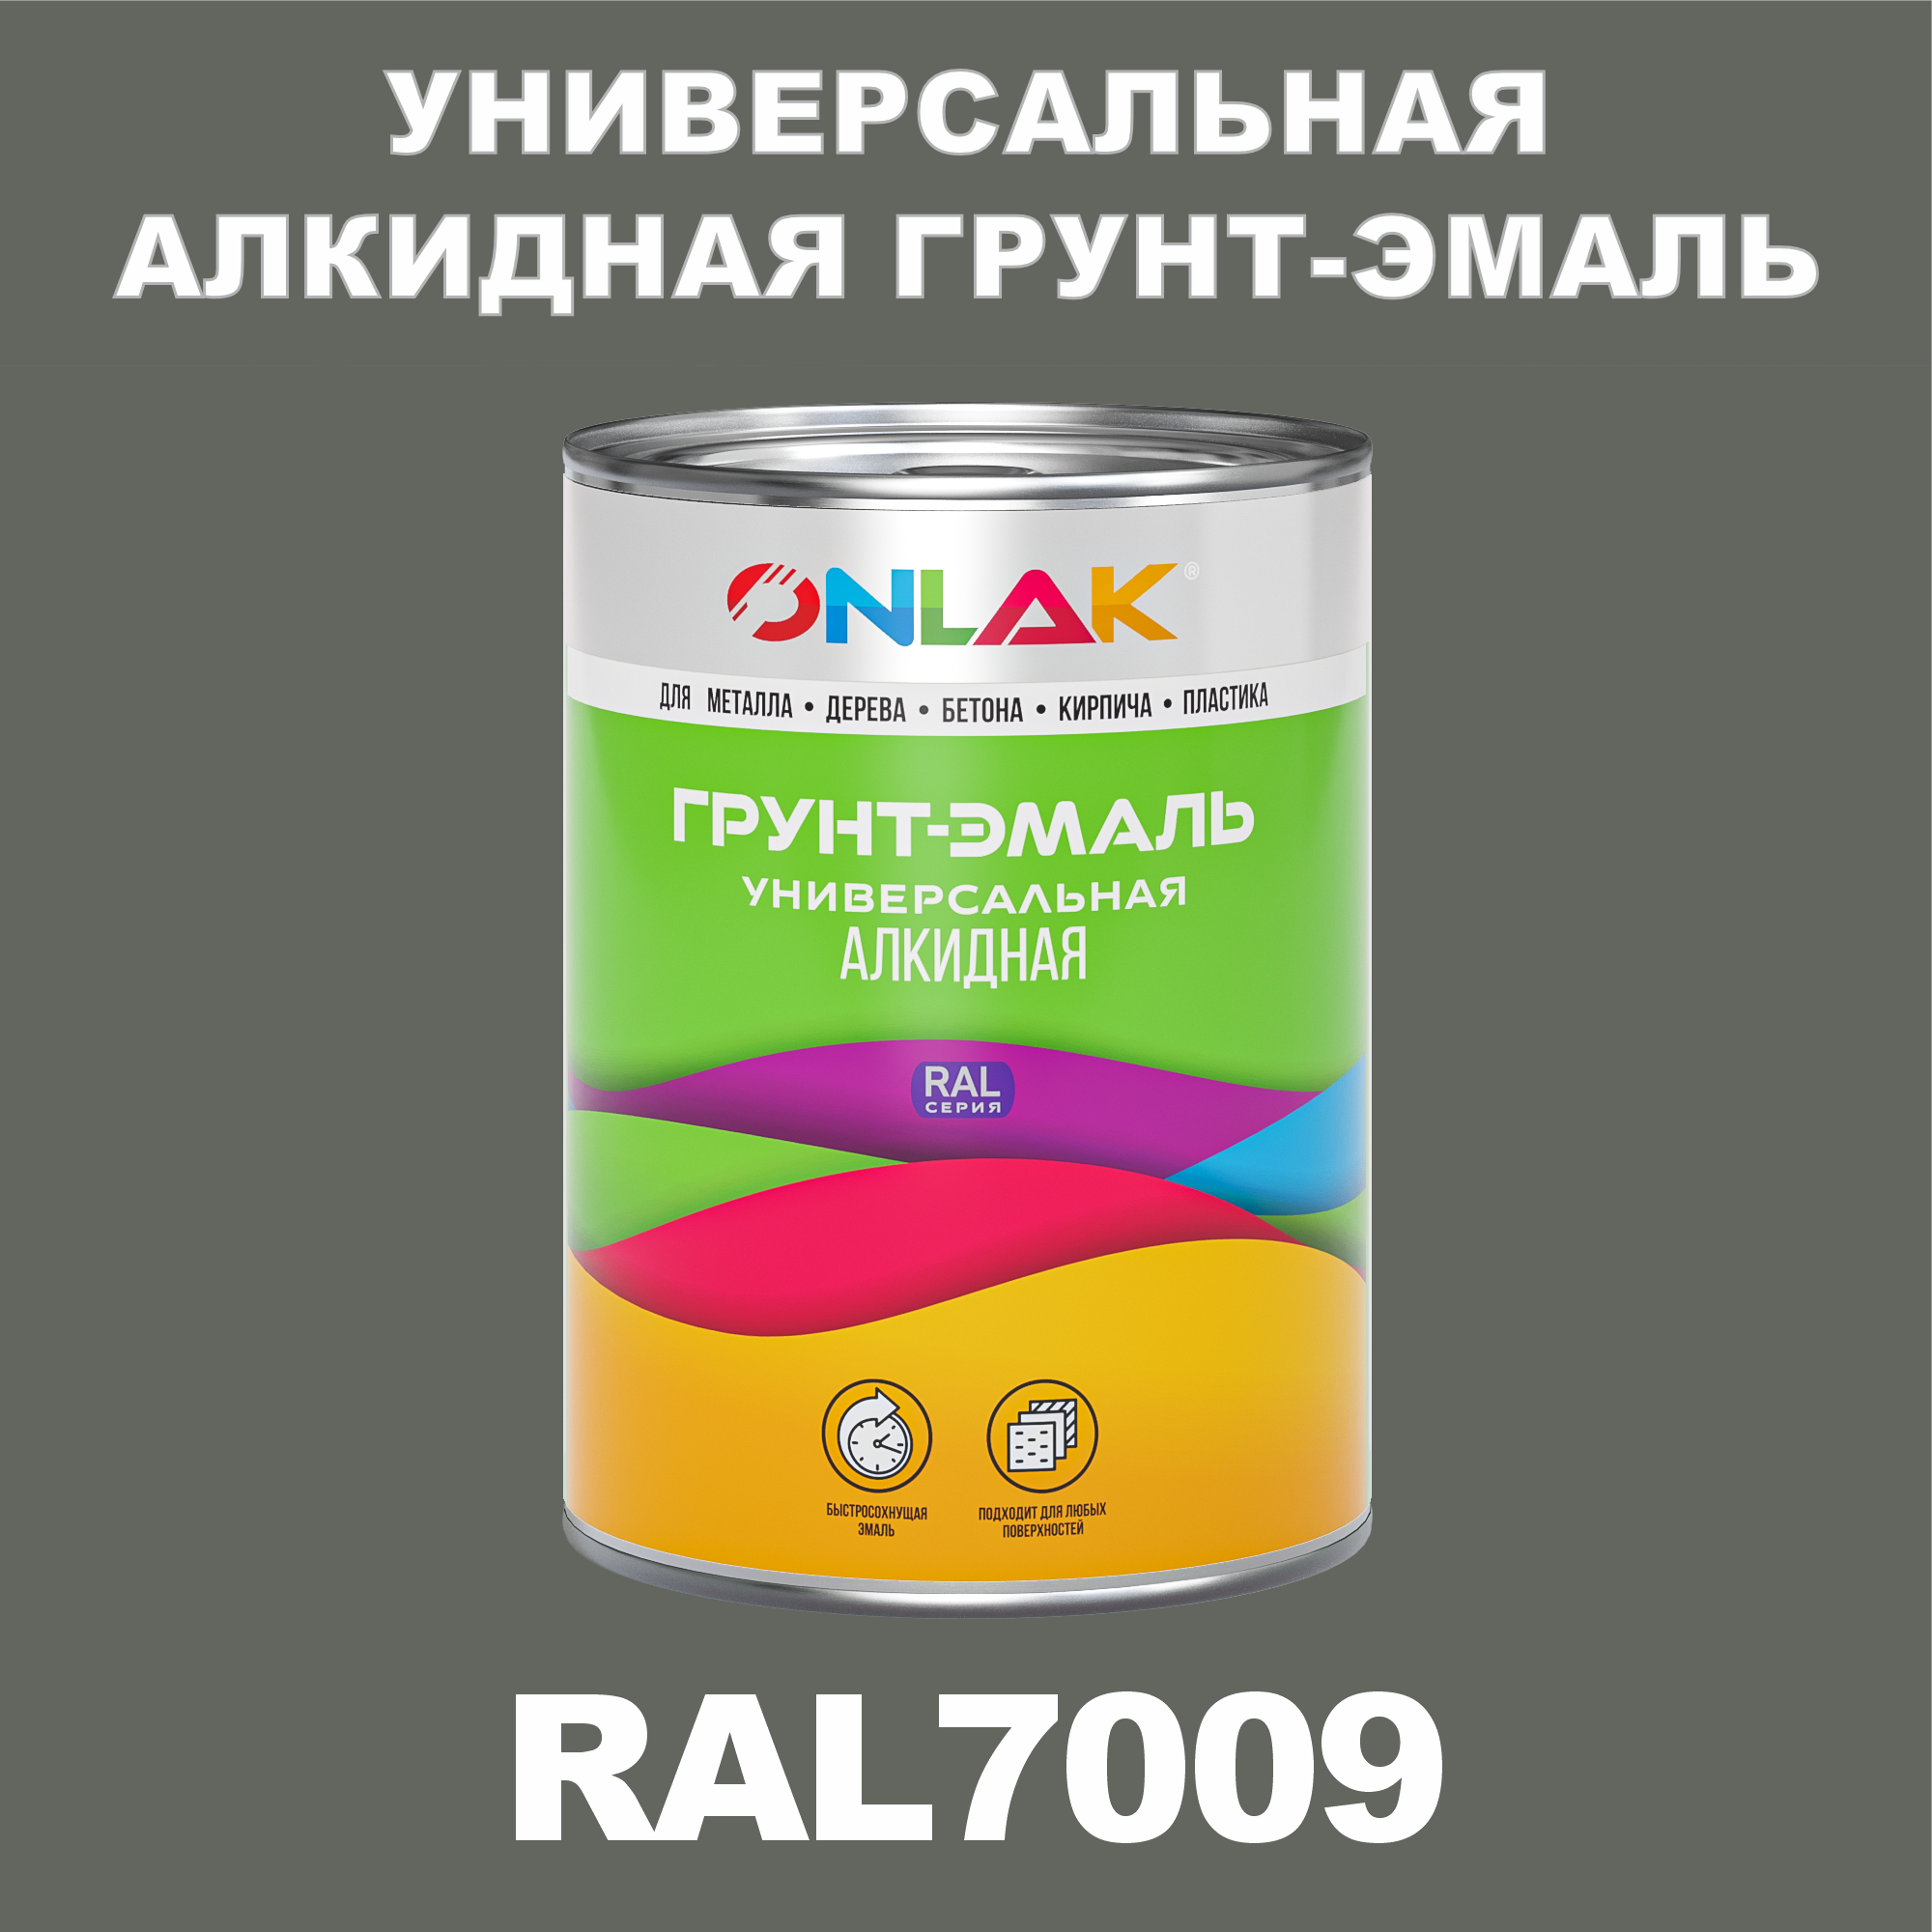 Грунт-эмаль ONLAK 1К RAL7009 антикоррозионная алкидная по металлу по ржавчине 1 кг грунт эмаль yollo по ржавчине алкидная серая 0 9 кг